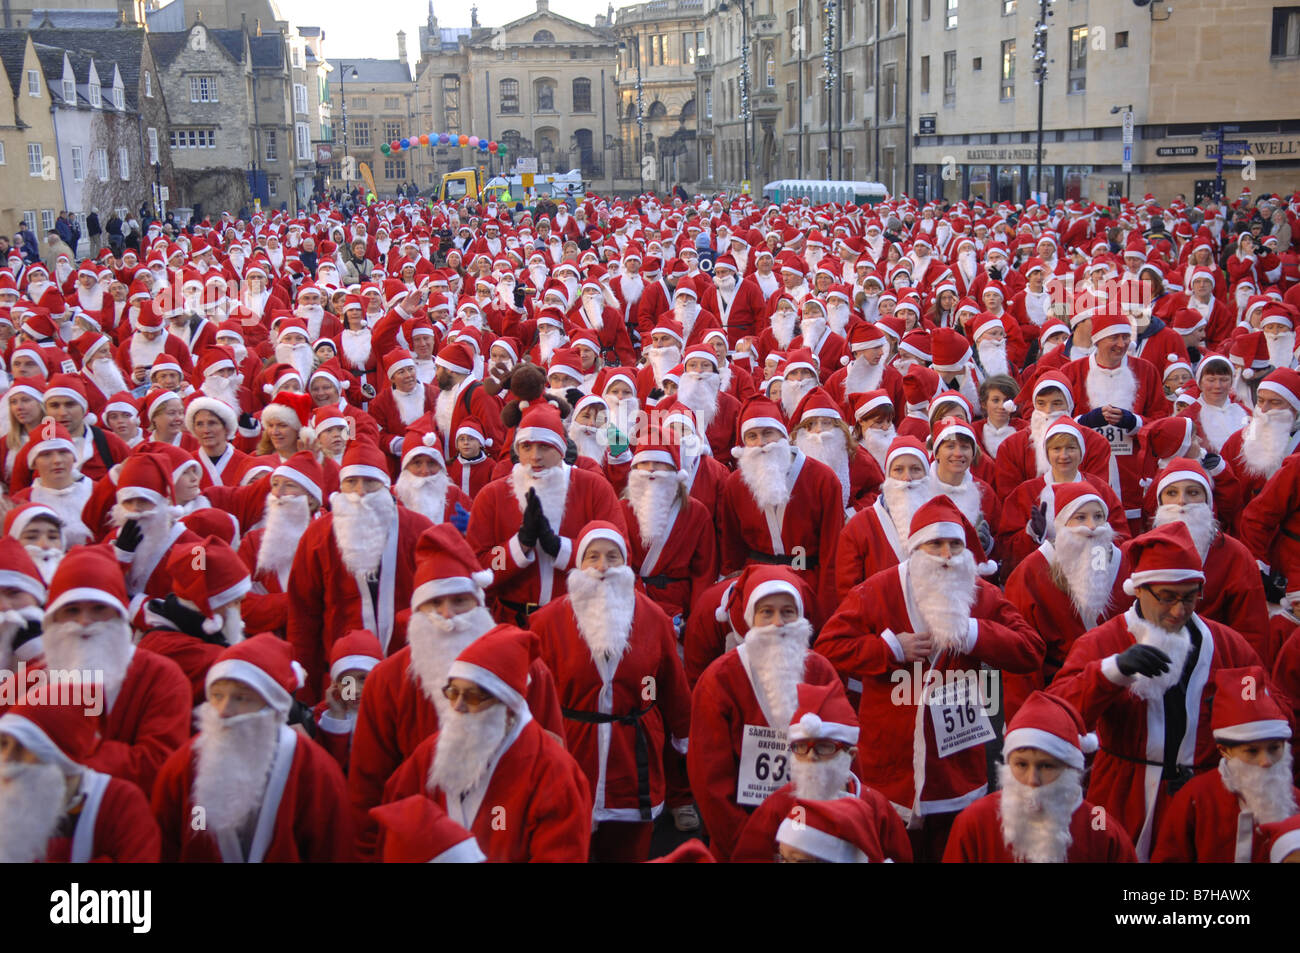 1000 Santa Vater Weihnachten gekleidet für einen jährlichen Spaß im Zentrum von Oxford Stadtzentrum laufen. Oxford, UK Stockfoto